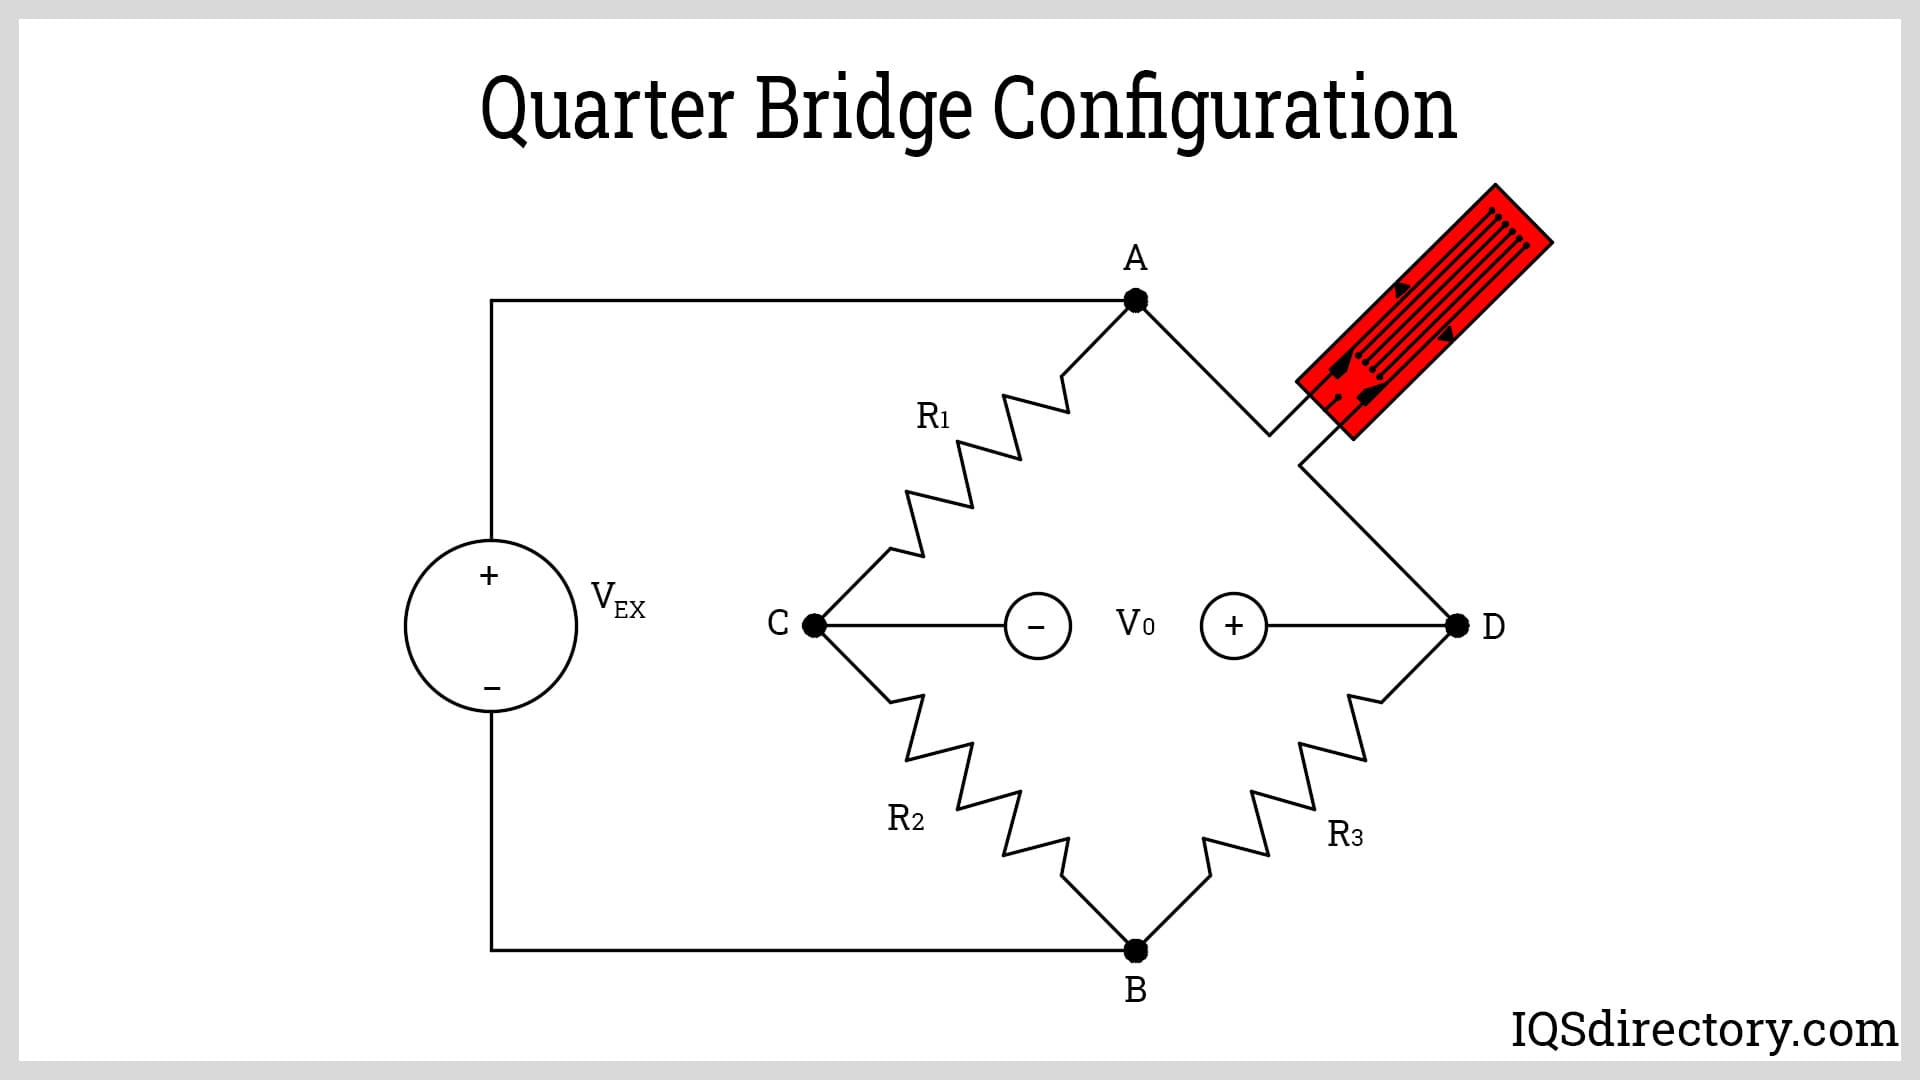 Quarter Bridge Configuration